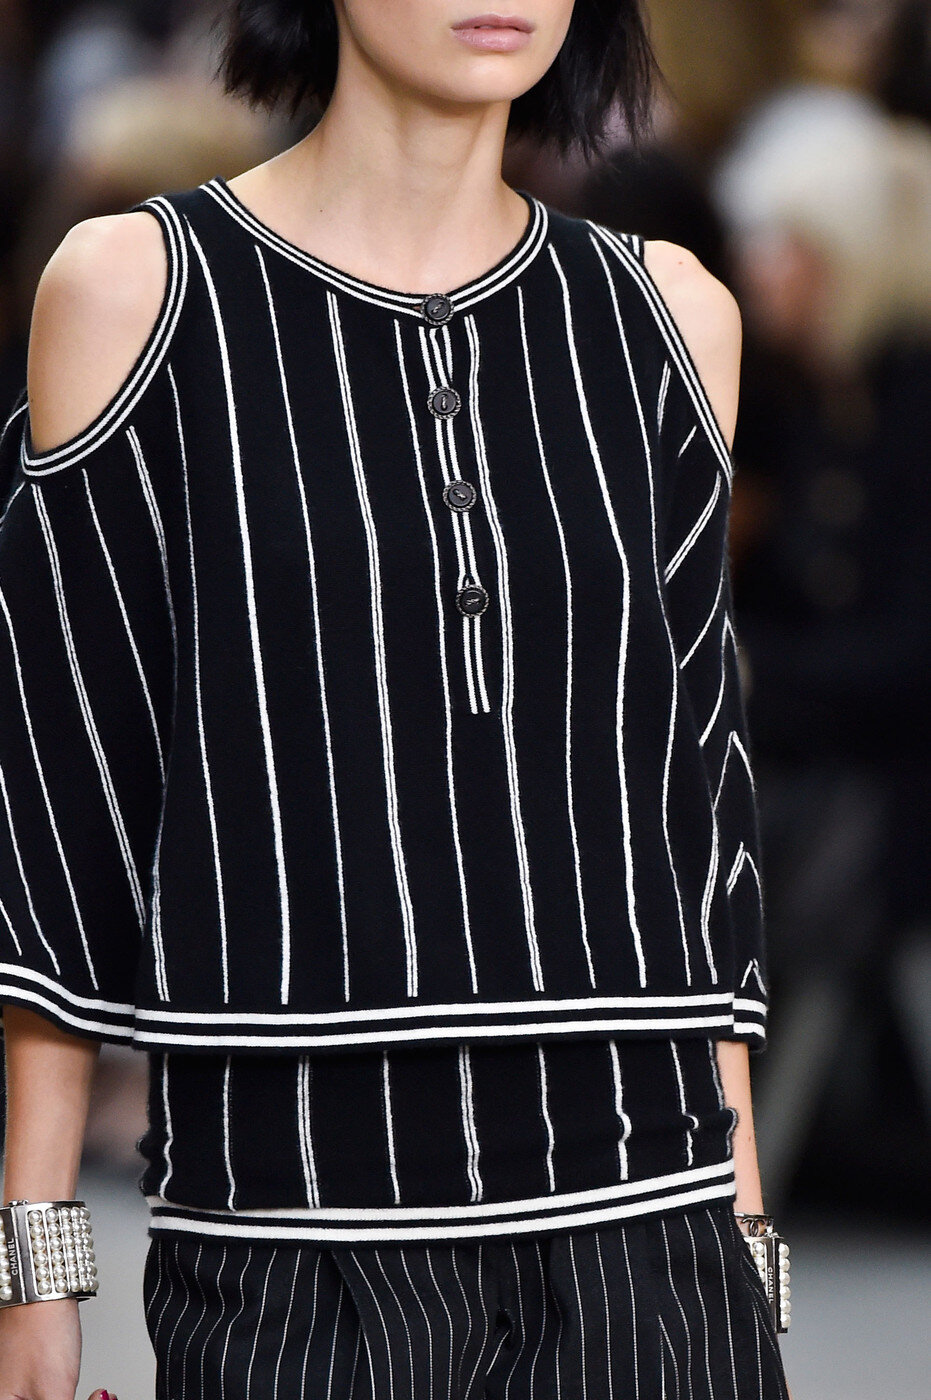 Chanel Striped Cold-Shoulder Knit Top in Black.jpg